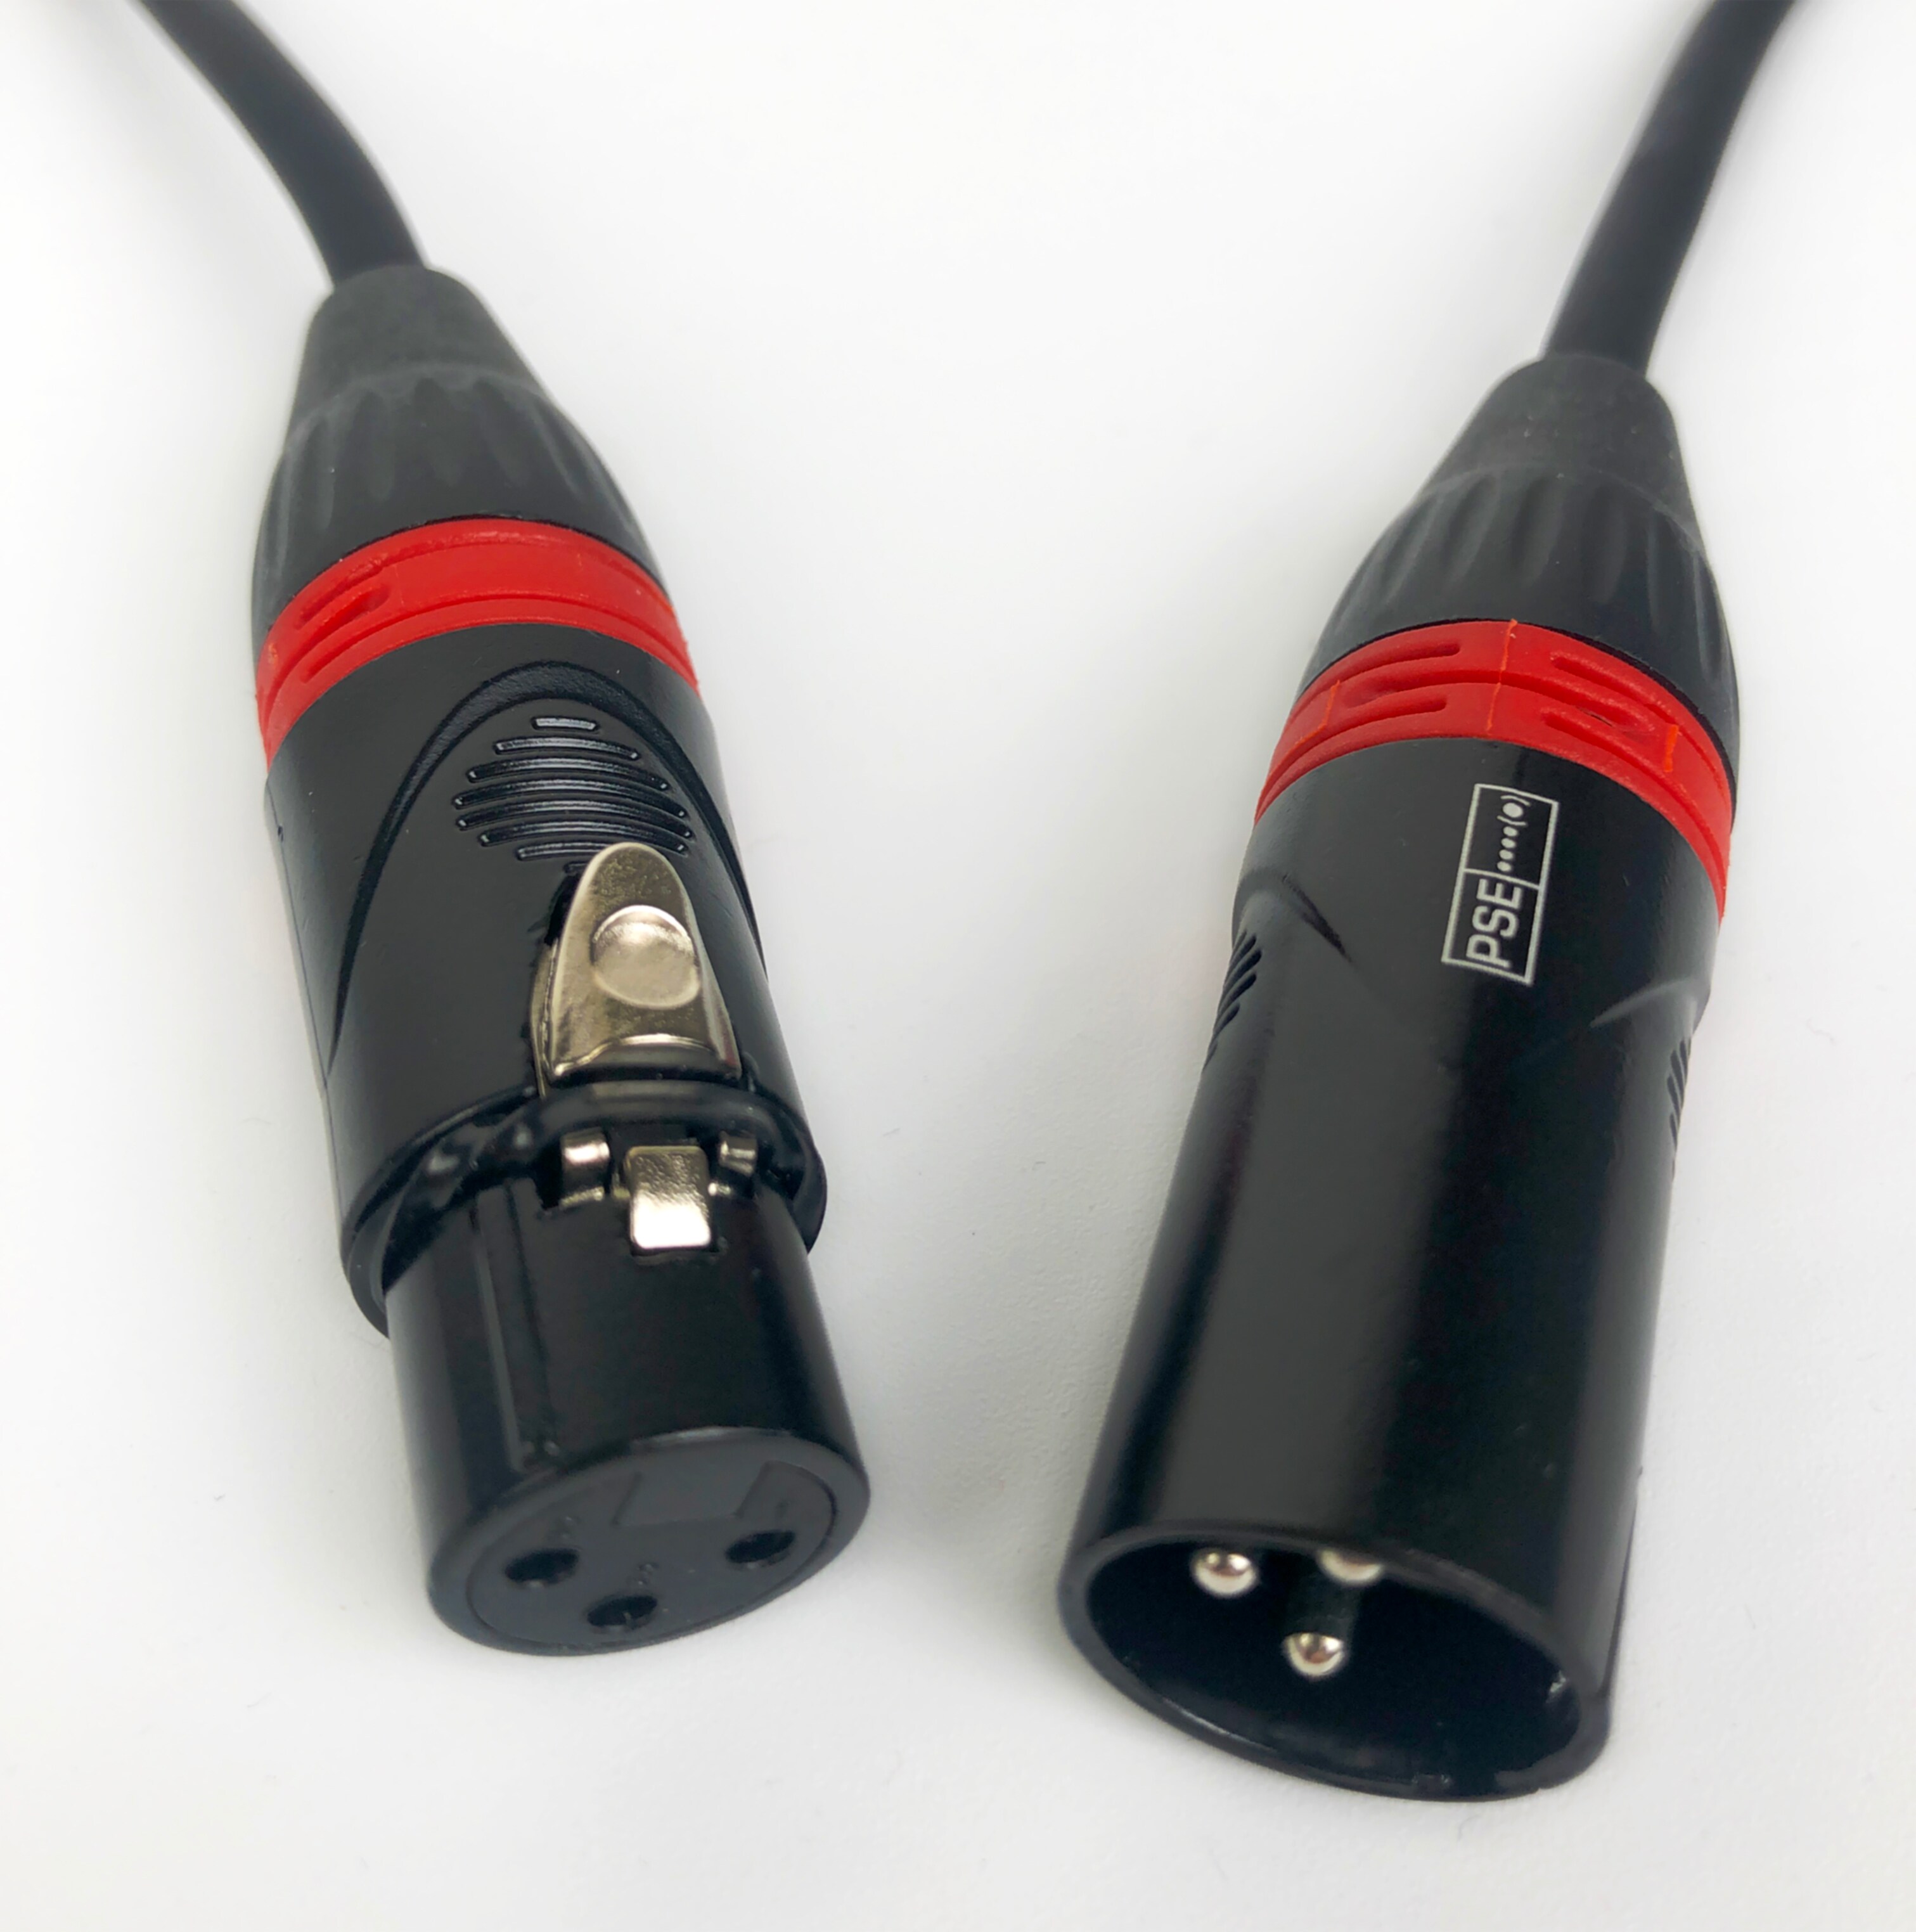 Röde Mikrofonkabel 1m XLR/XLR